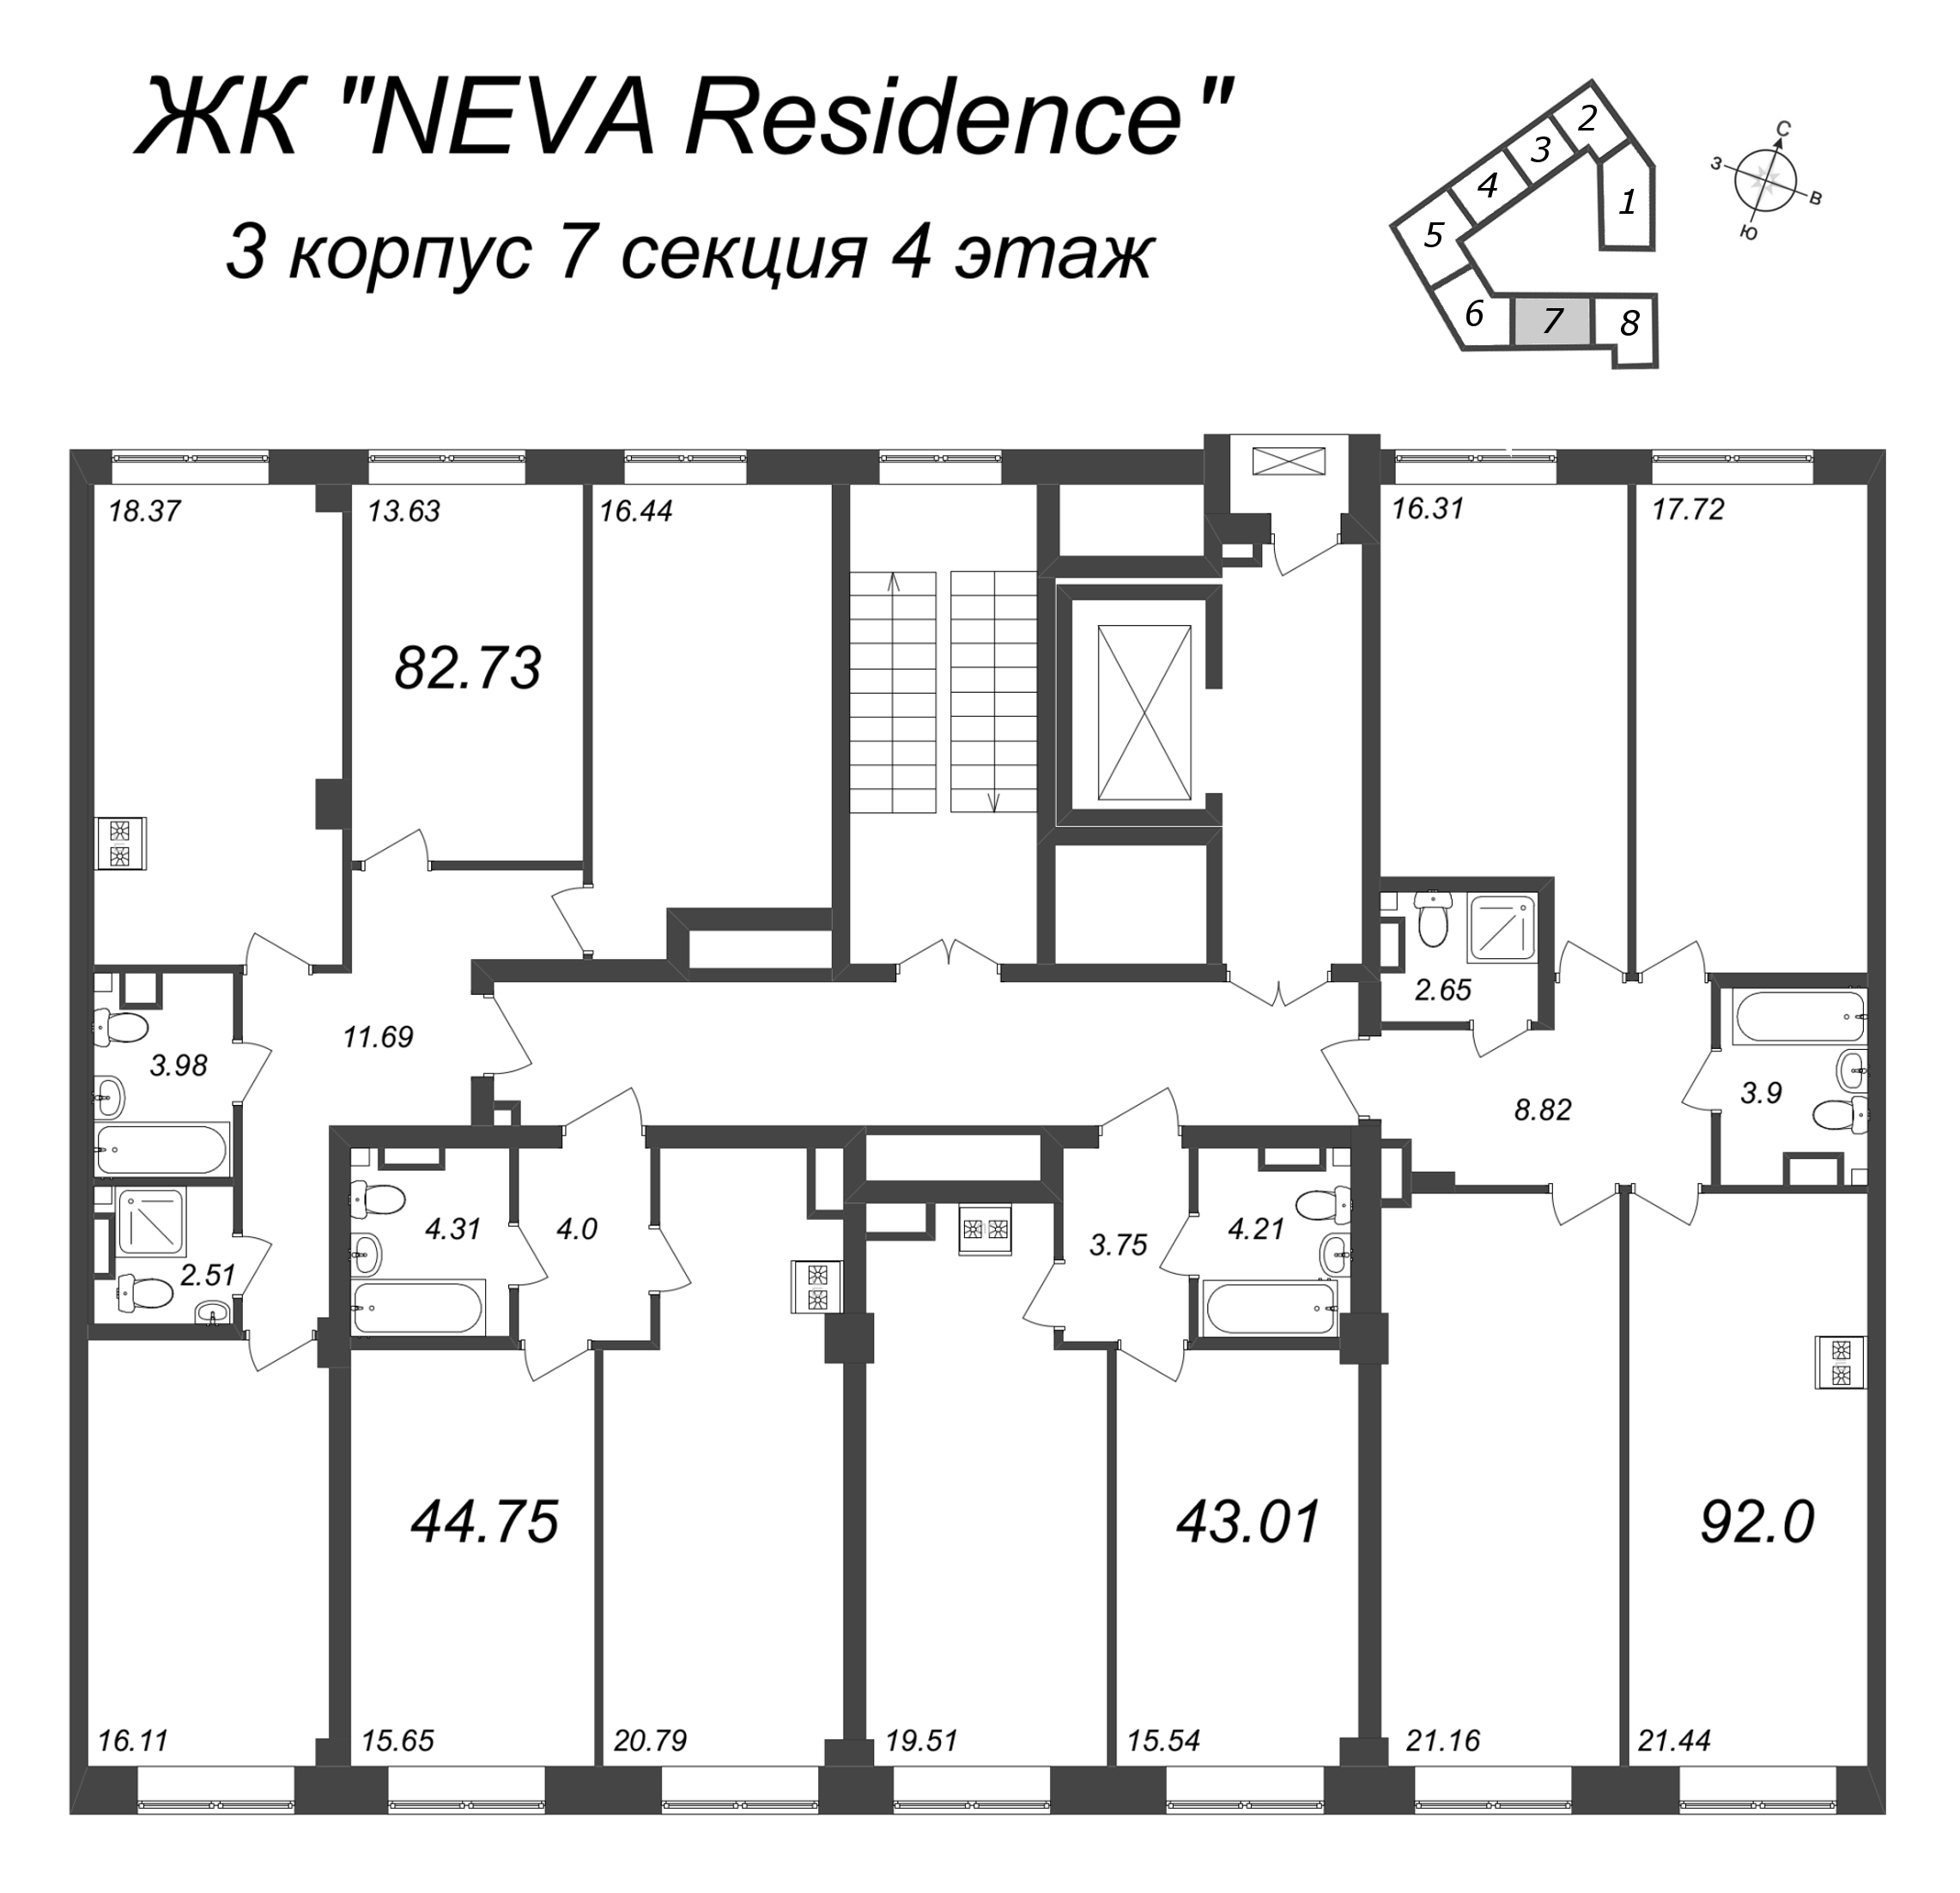 4-комнатная (Евро) квартира, 82.73 м² в ЖК "Neva Residence" - планировка этажа